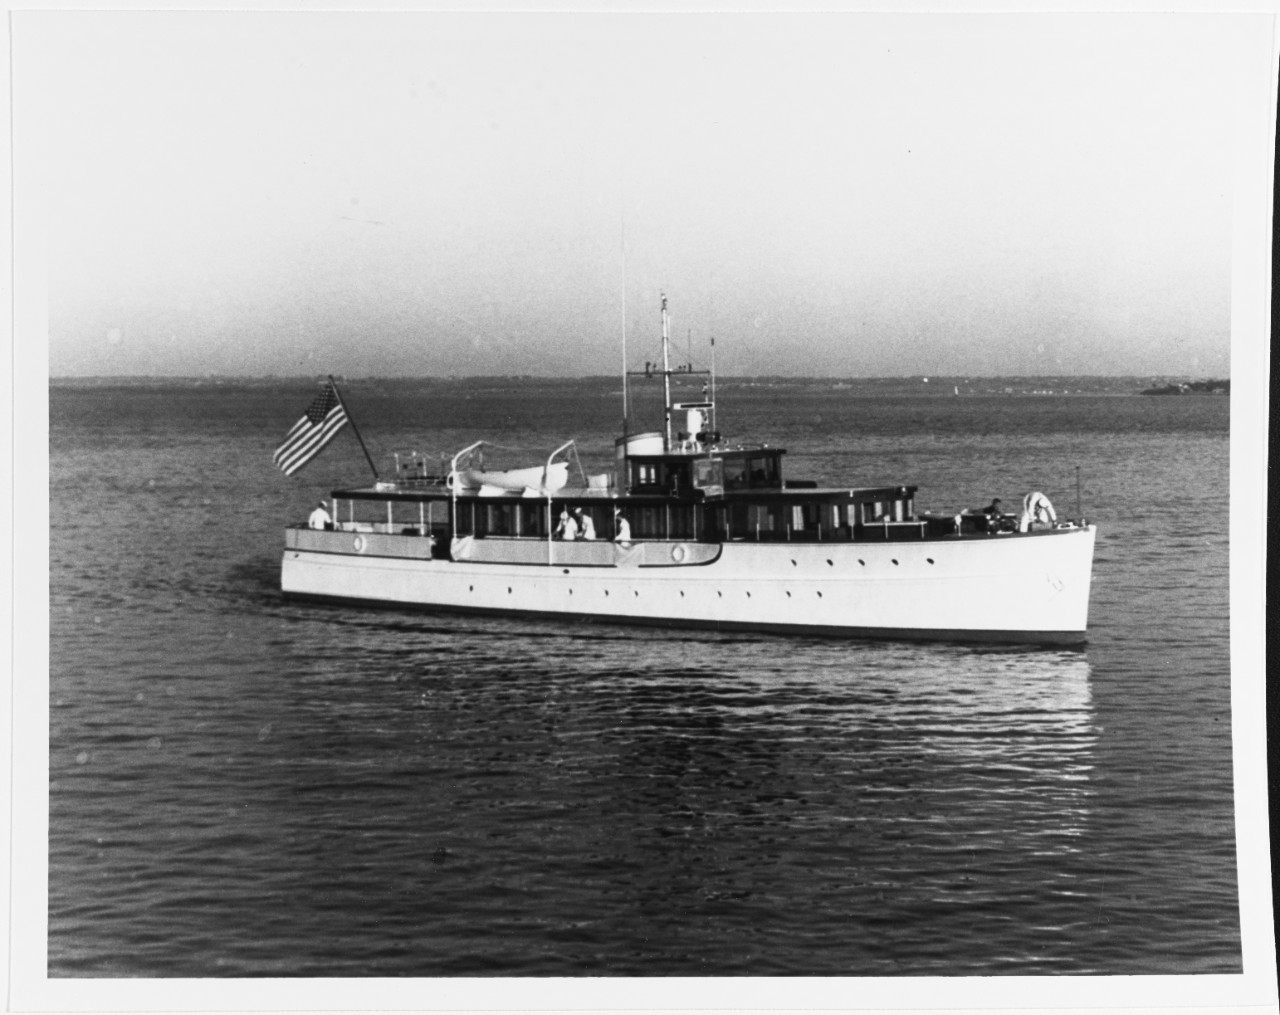 Presidential yacht HONEY FITZ